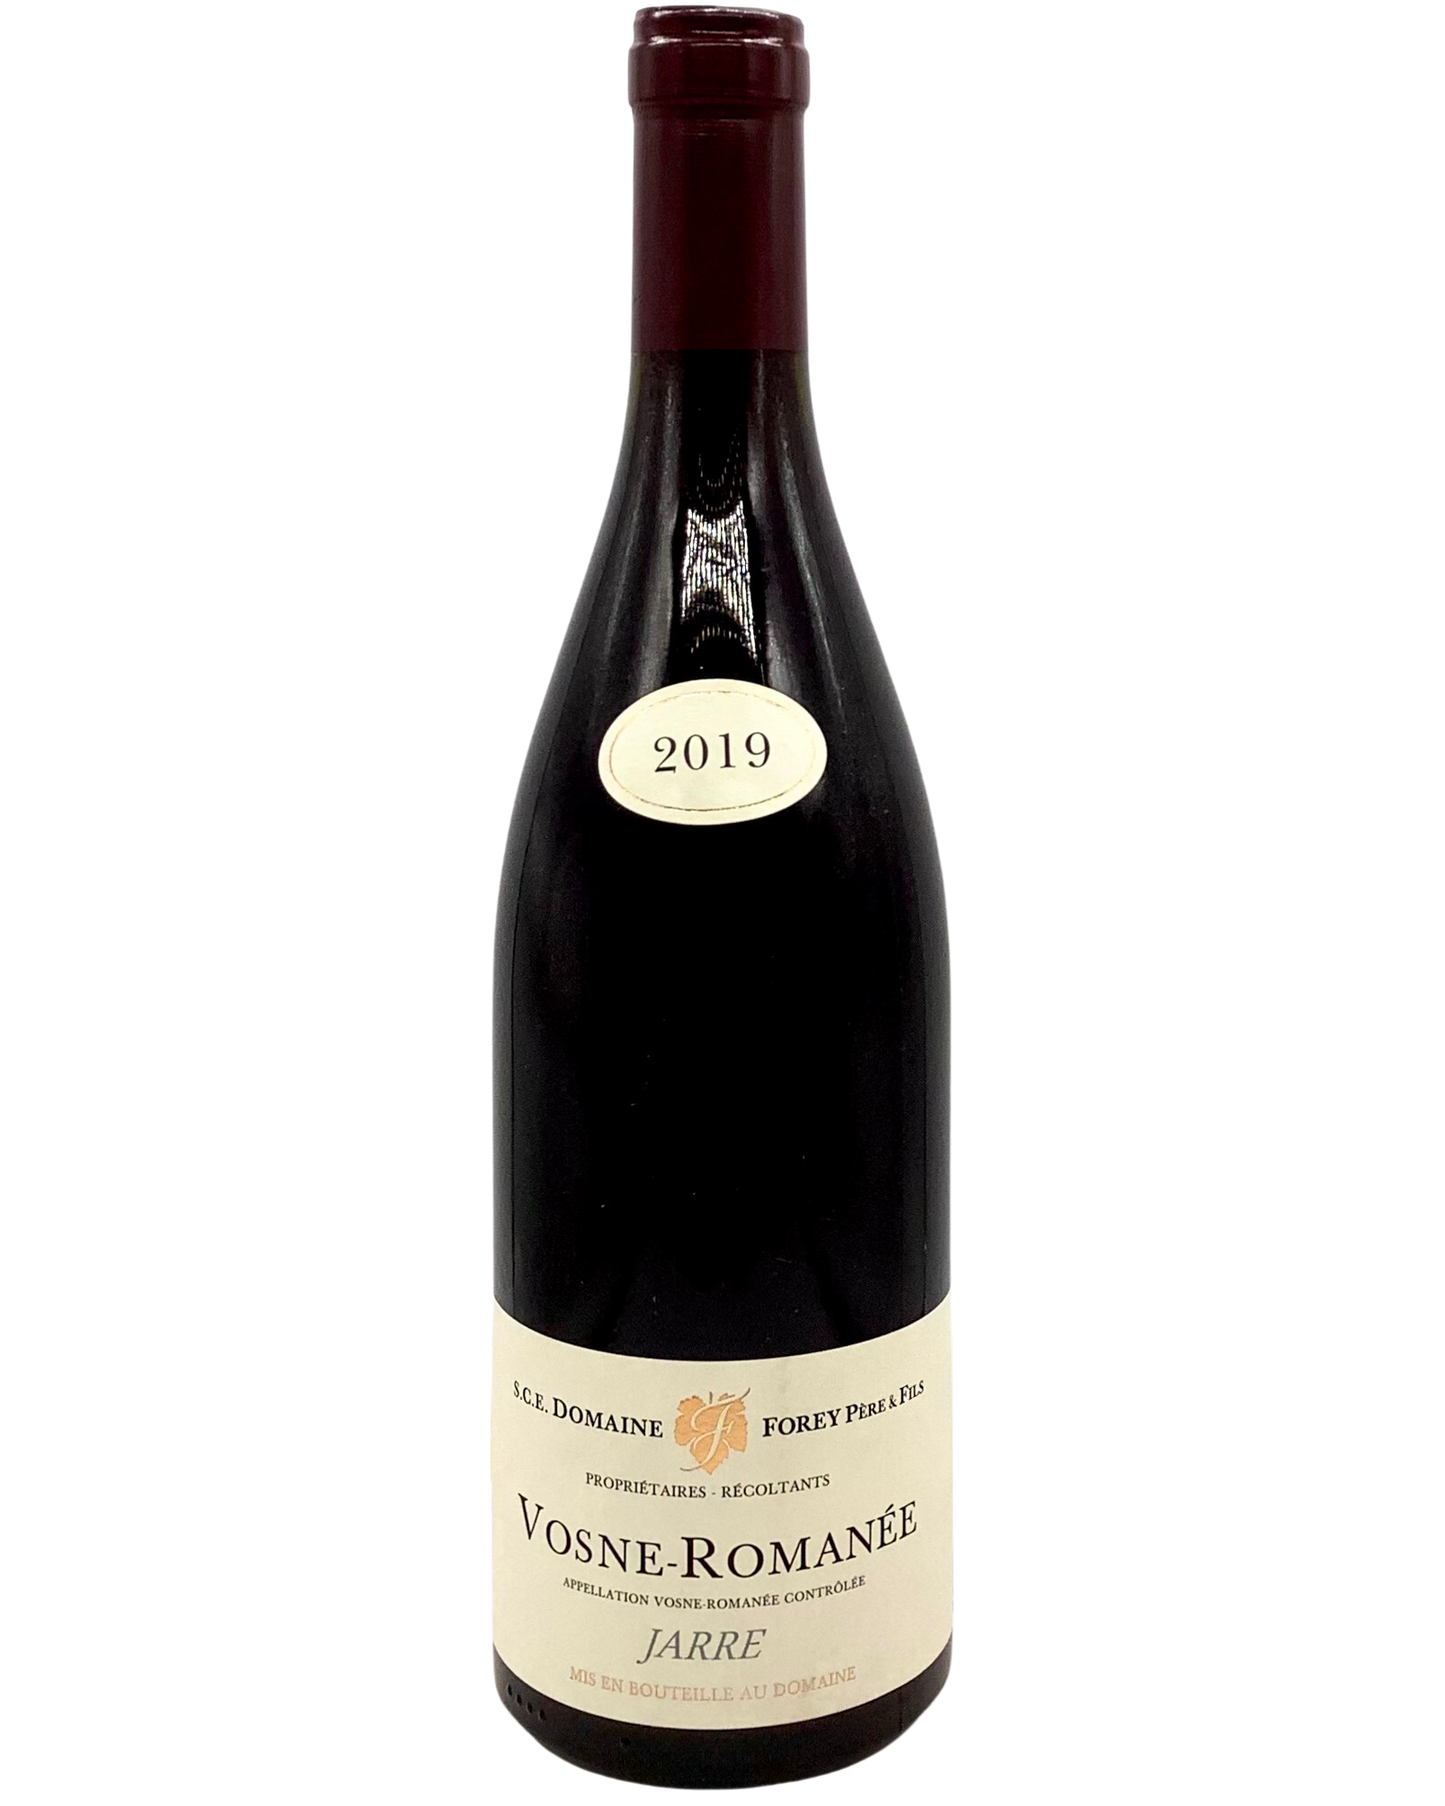 Domaine Forey, Pinot Noir, Vosne-Romanée "Jarre" Côte de Nuits, Burgundy, France 2019 accumula burgundy